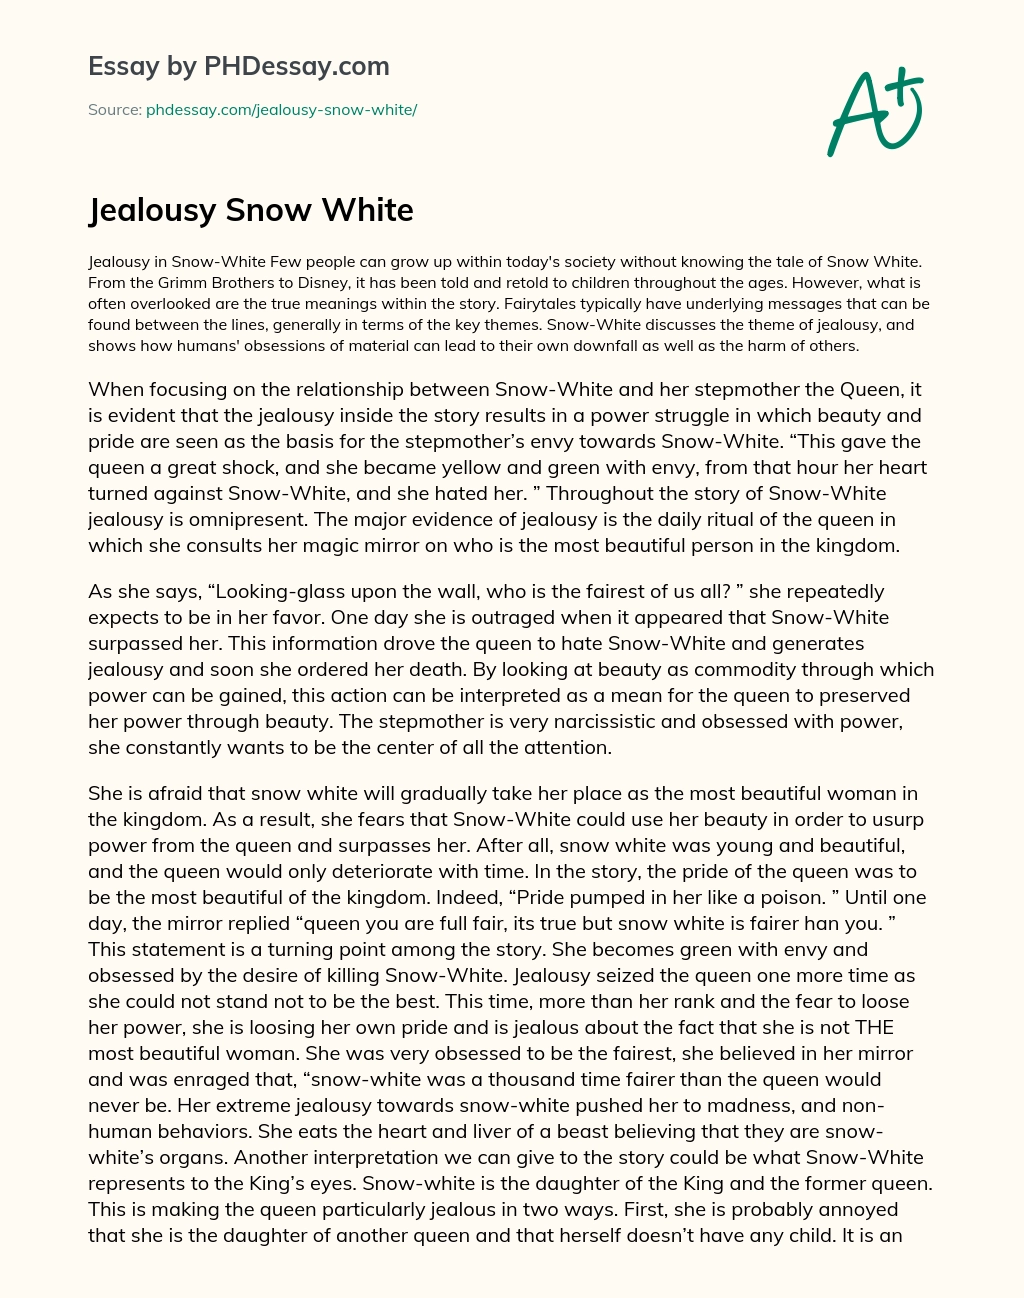 Jealousy Snow White essay